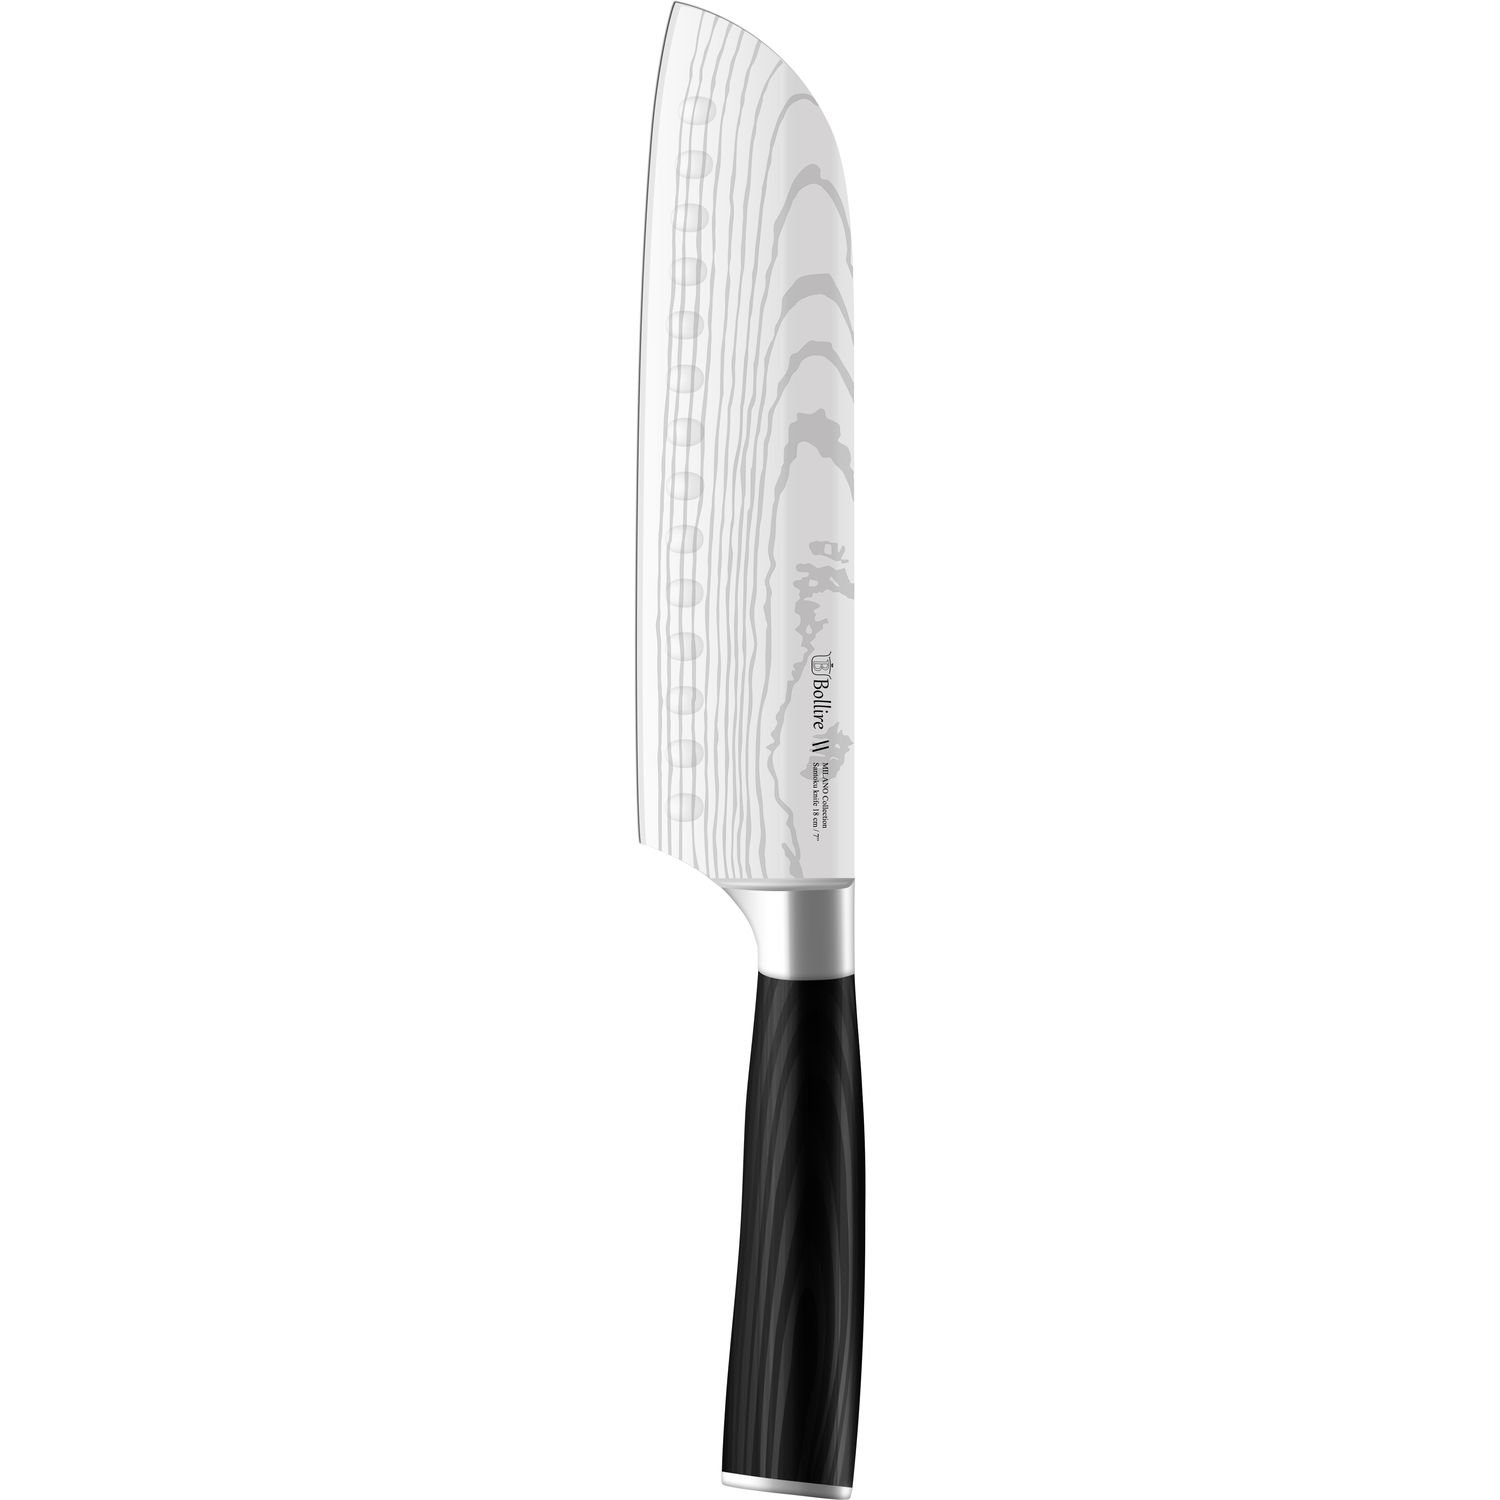 Нож сантоку Bollire Milano, 18 см (BR-6203) - фото 1